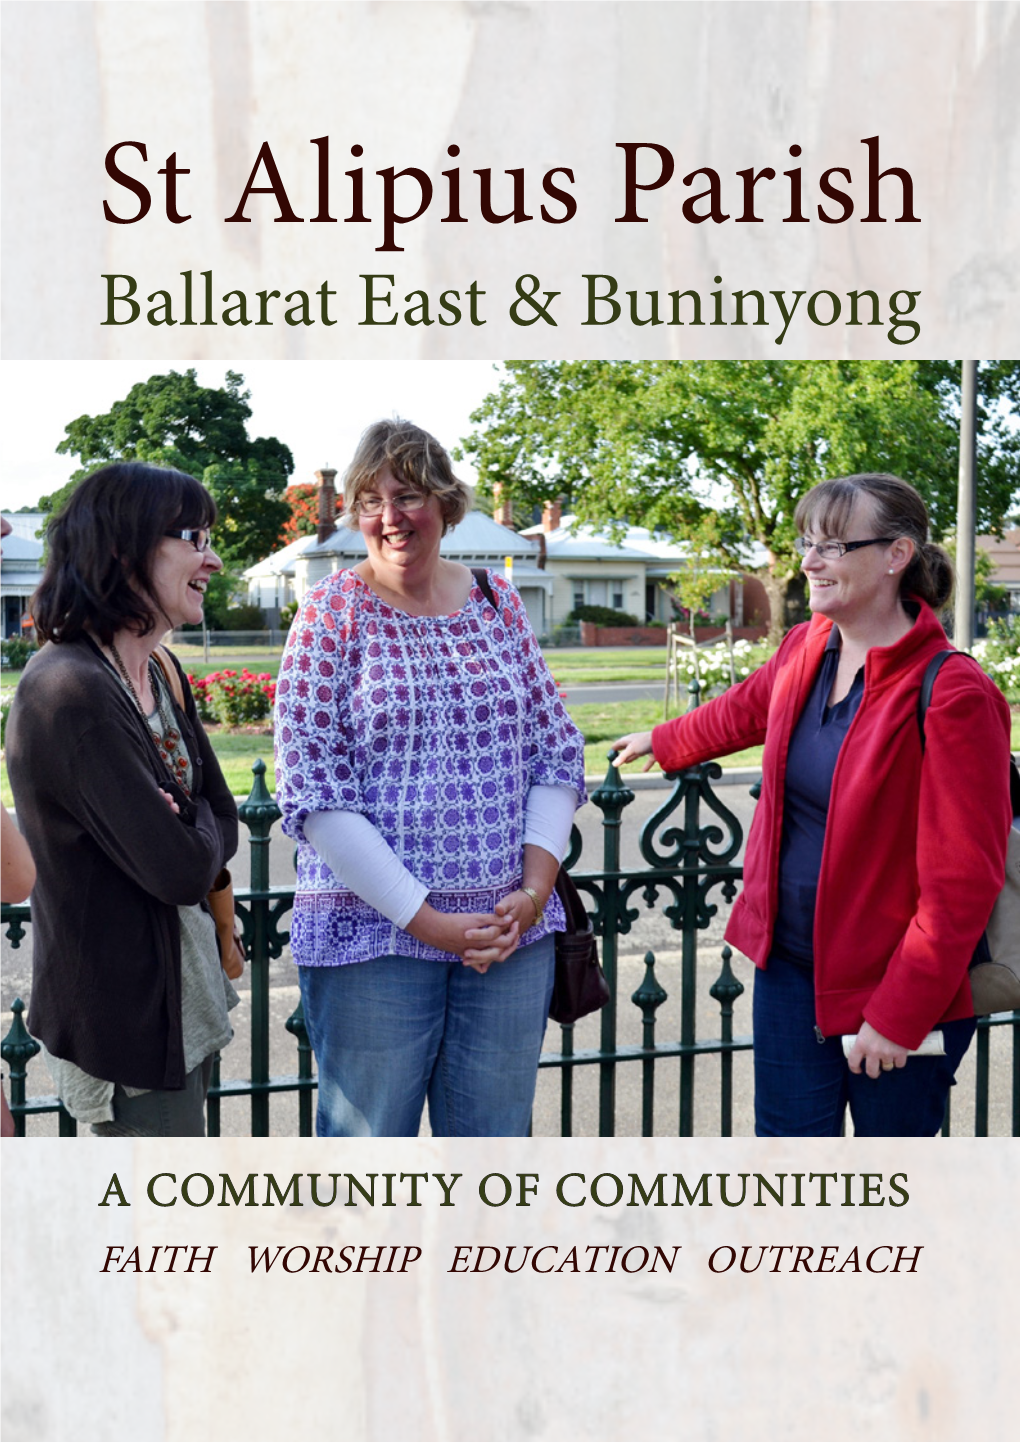 Ballarat East & Buninyong